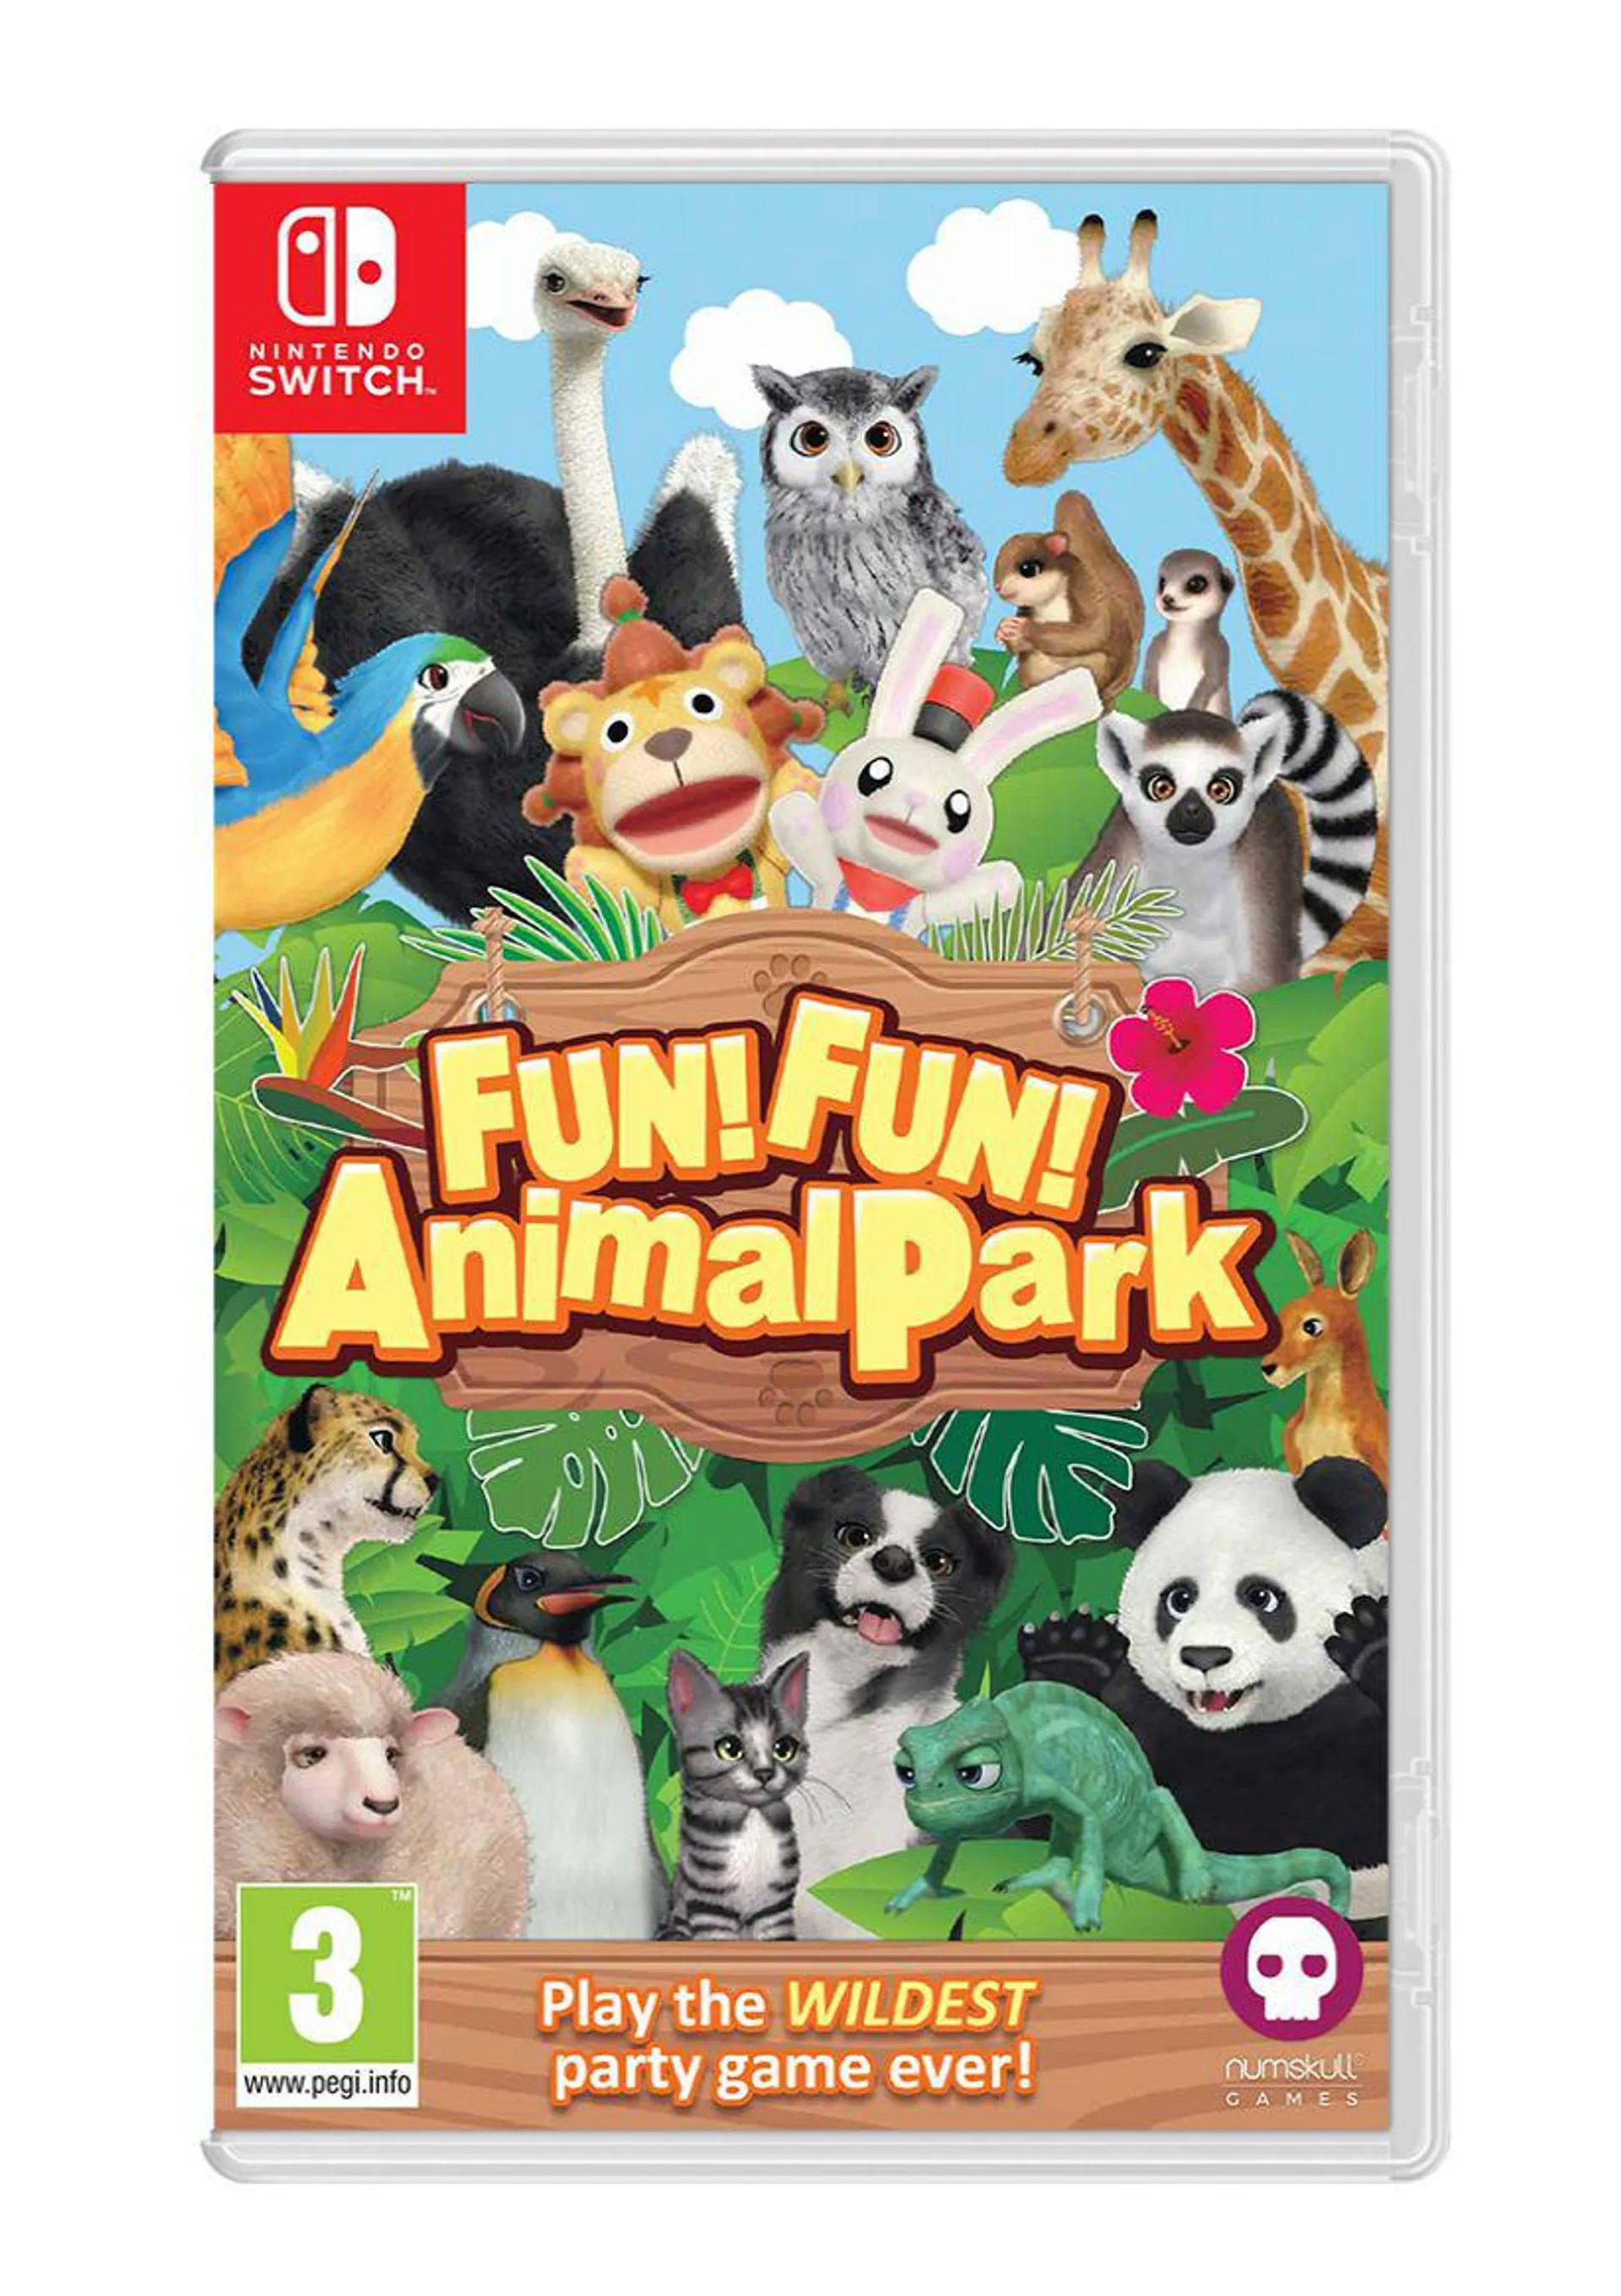 Fun! Fun! Animal Park on Nintendo Switch